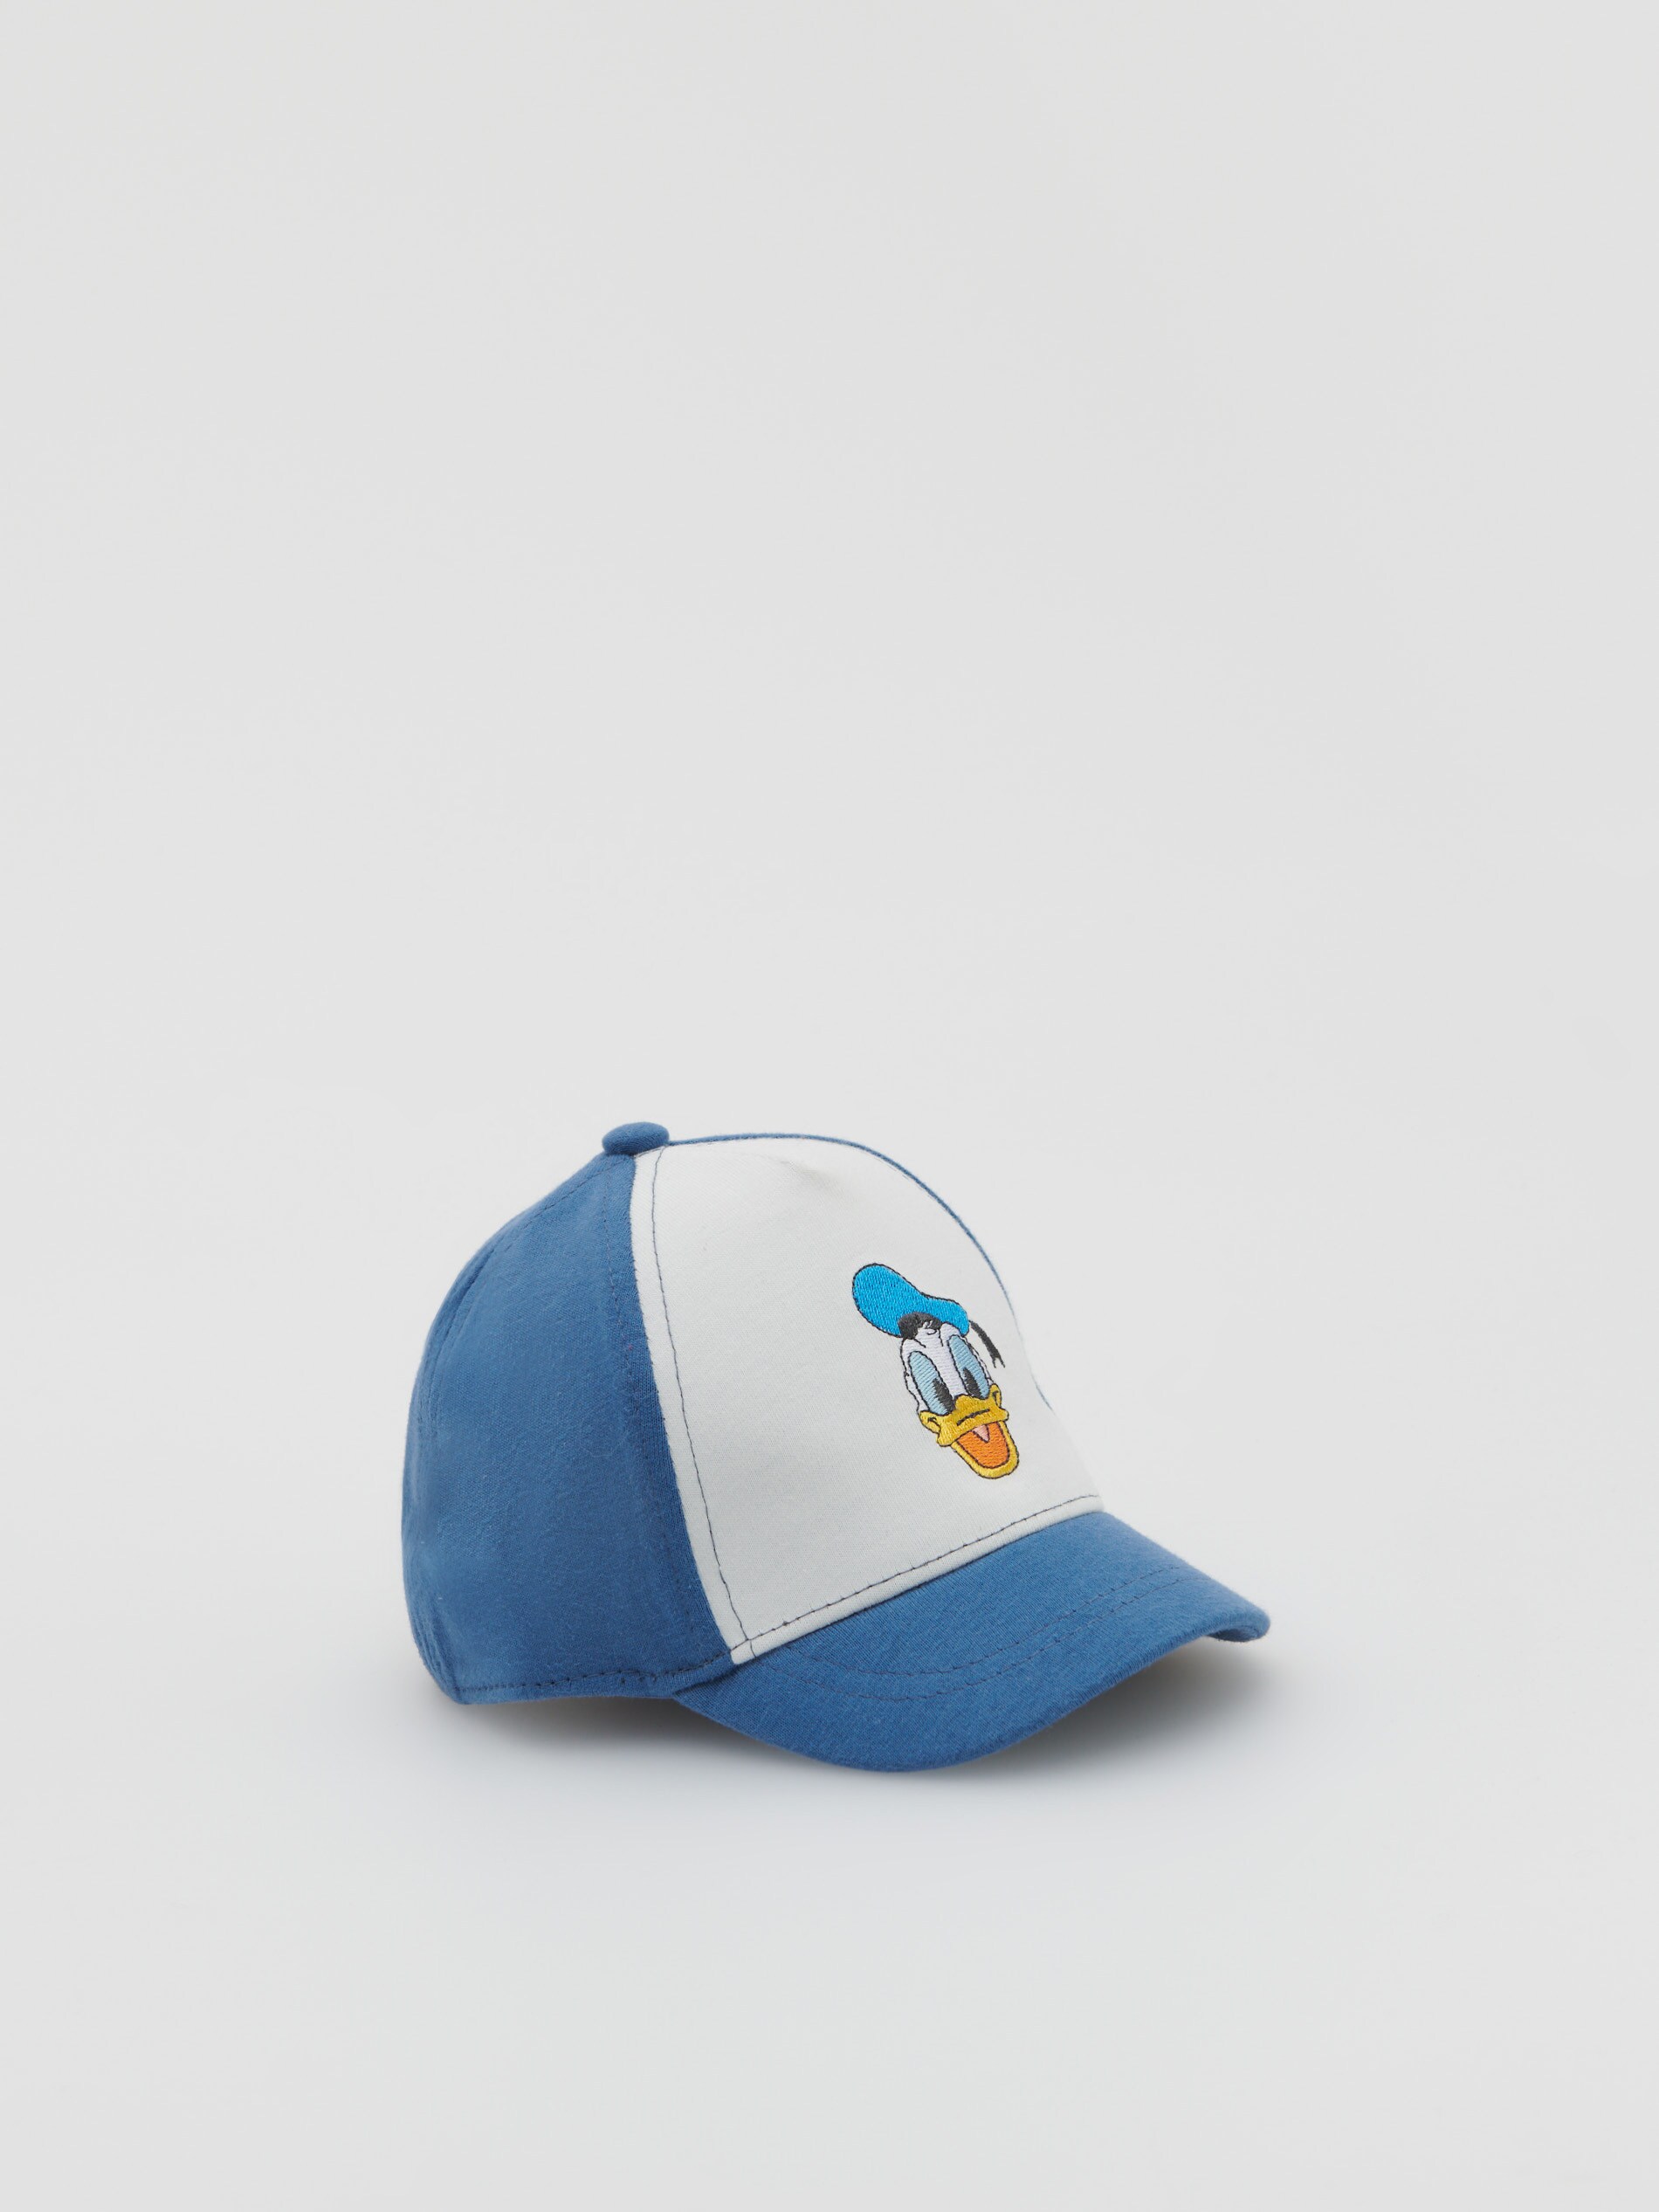 Babies` peaked cap